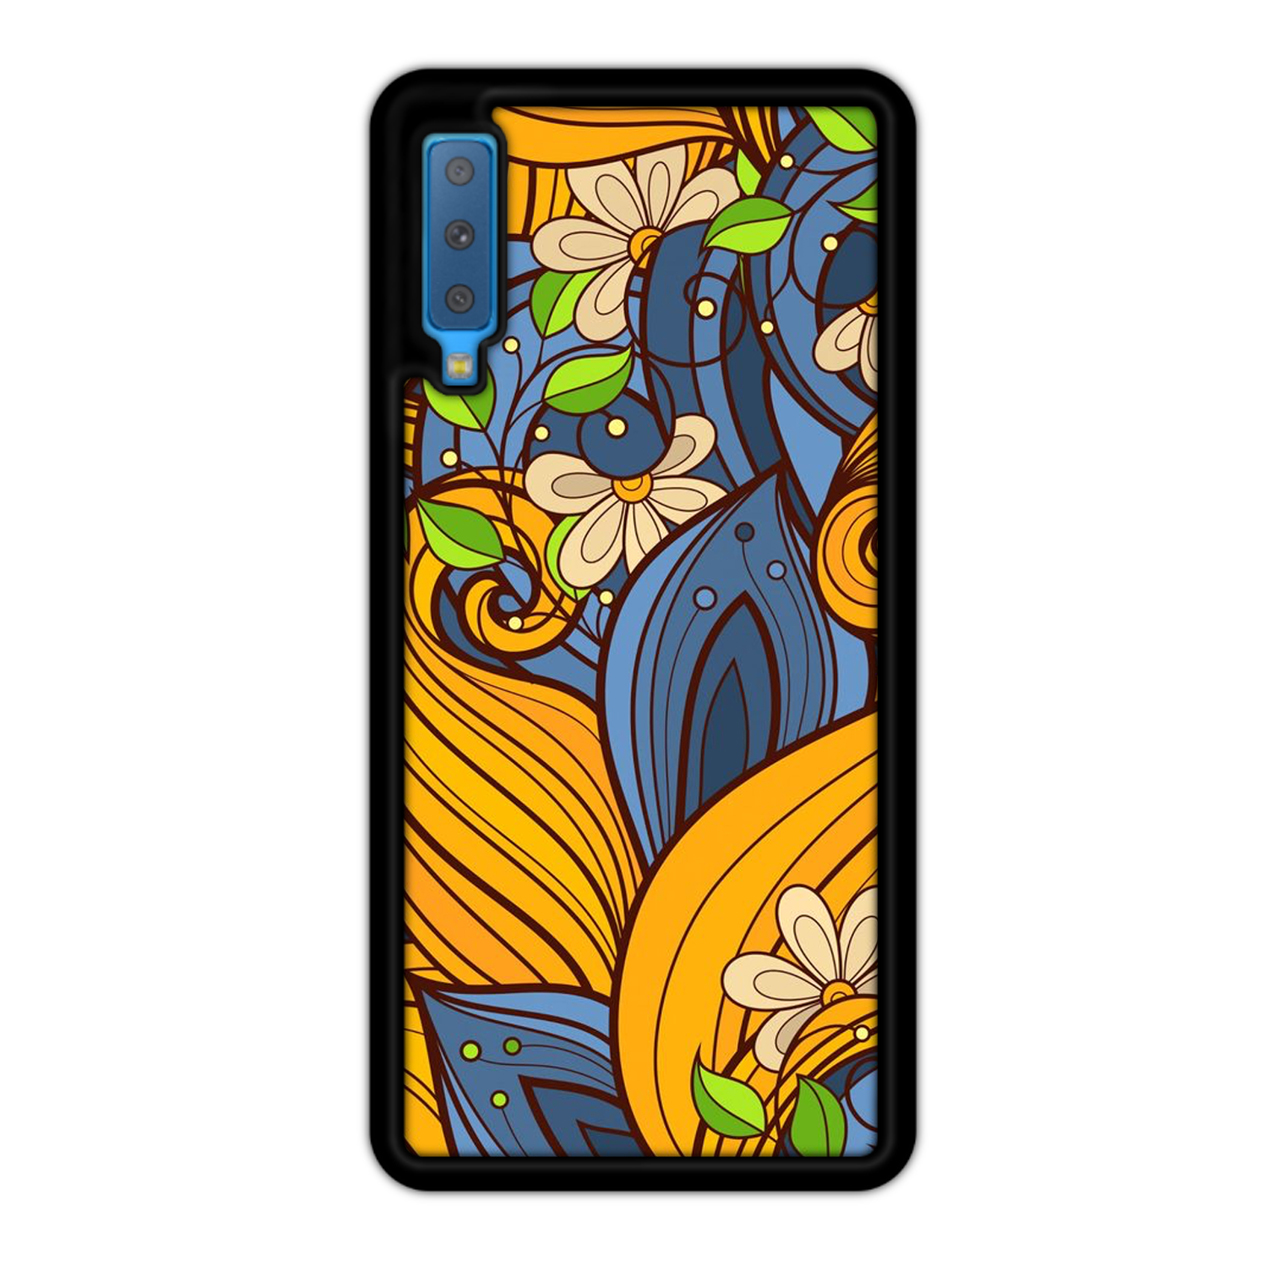 کاور آکام مدل AMCAasev2218 مناسب برای گوشی موبایل سامسونگ Galaxy A7 2018